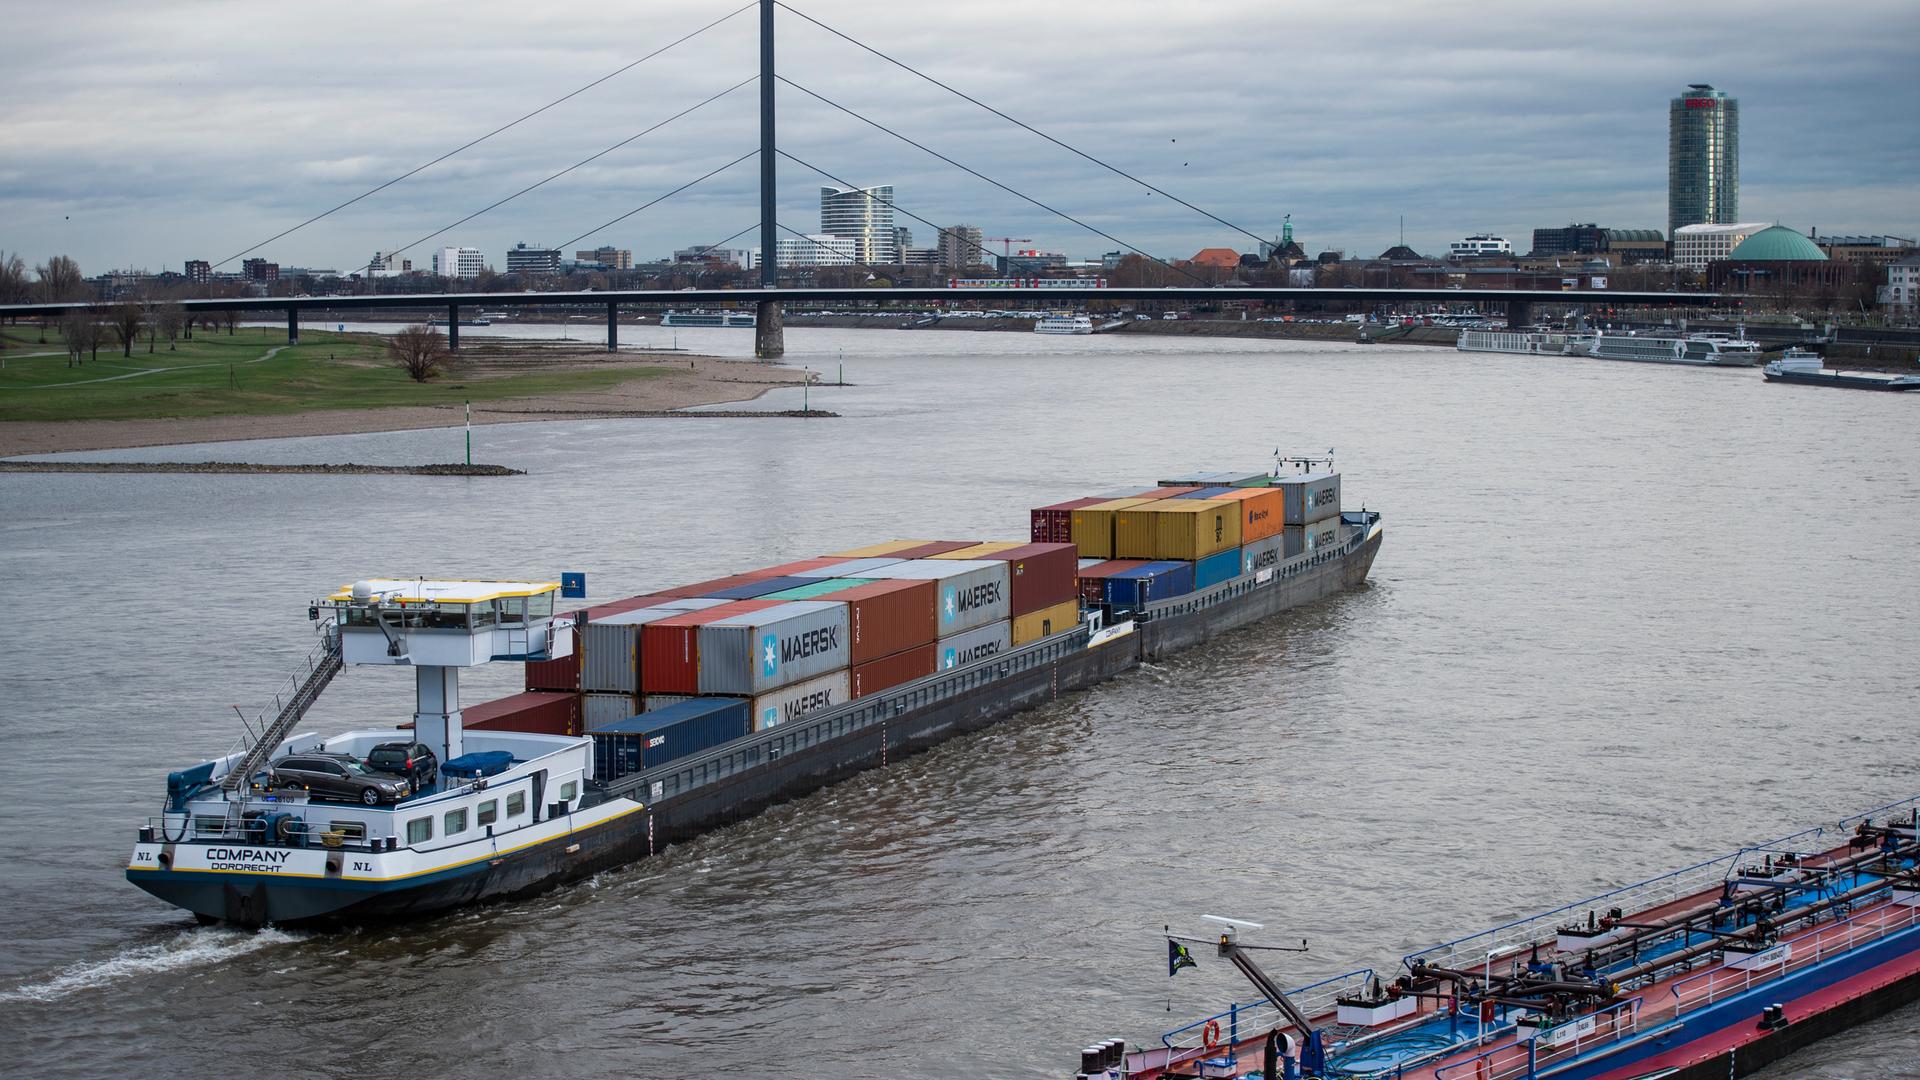 Frachtschiffe fahren in Düsseldorf auf dem Rhein